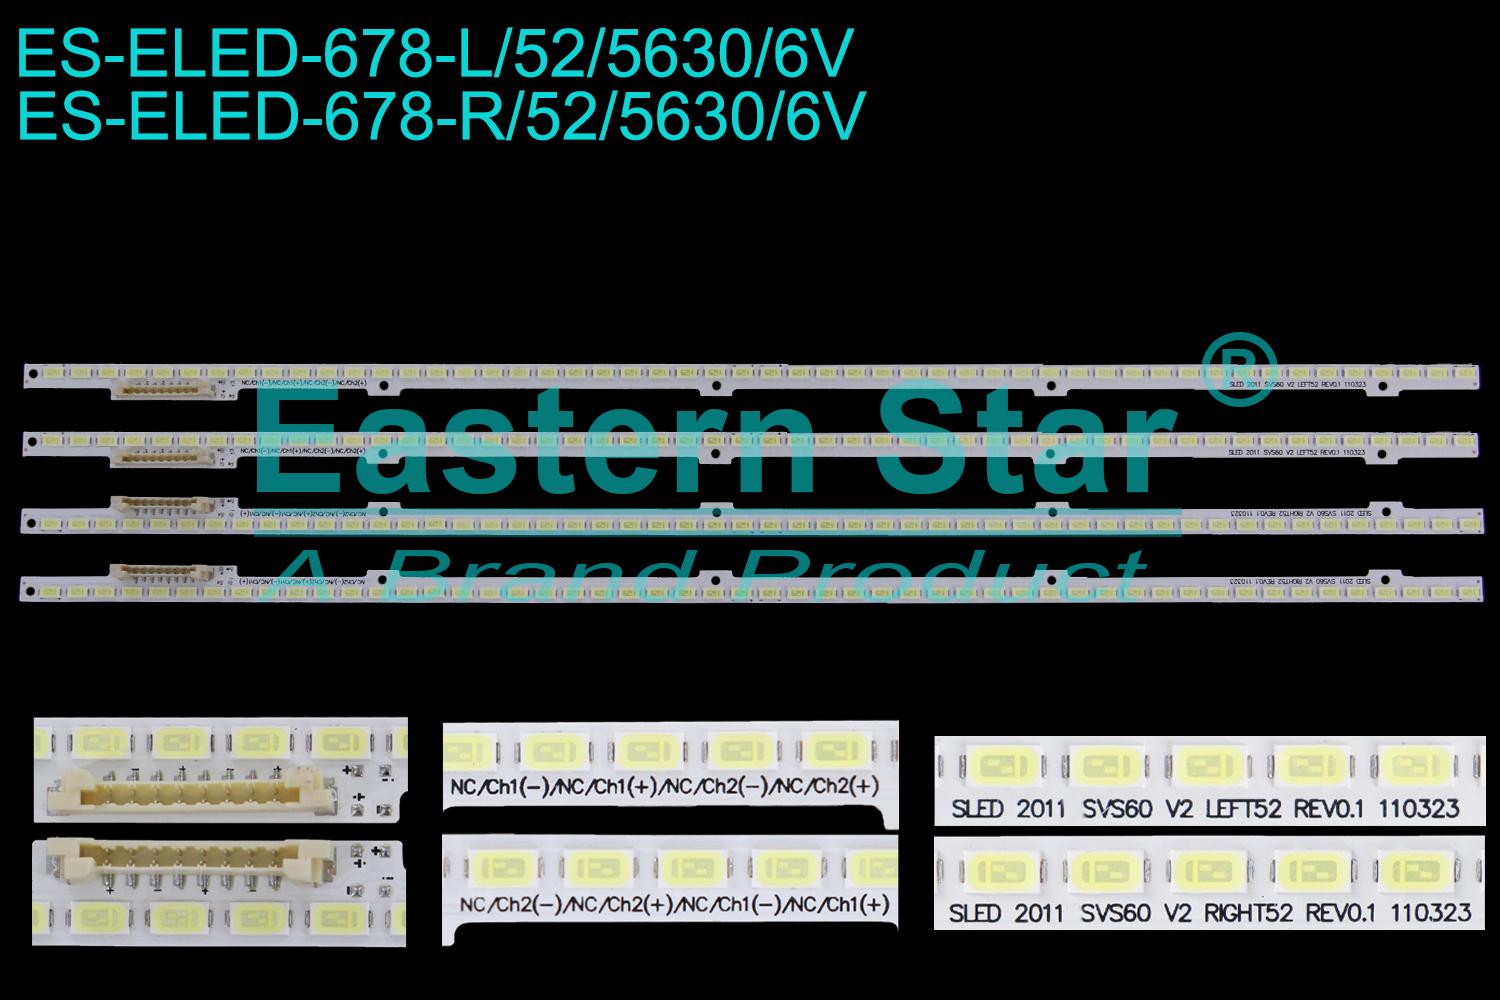 ES-ELED-678 ELED/EDGE TV backlight use for 60'' Samsung UN60D7000VFXZA ELED 2011SVS60 V2 RIGHT52, ELED 2011SVS60 V2 LEFT52, BN96-19859A LED STRIPS(4)